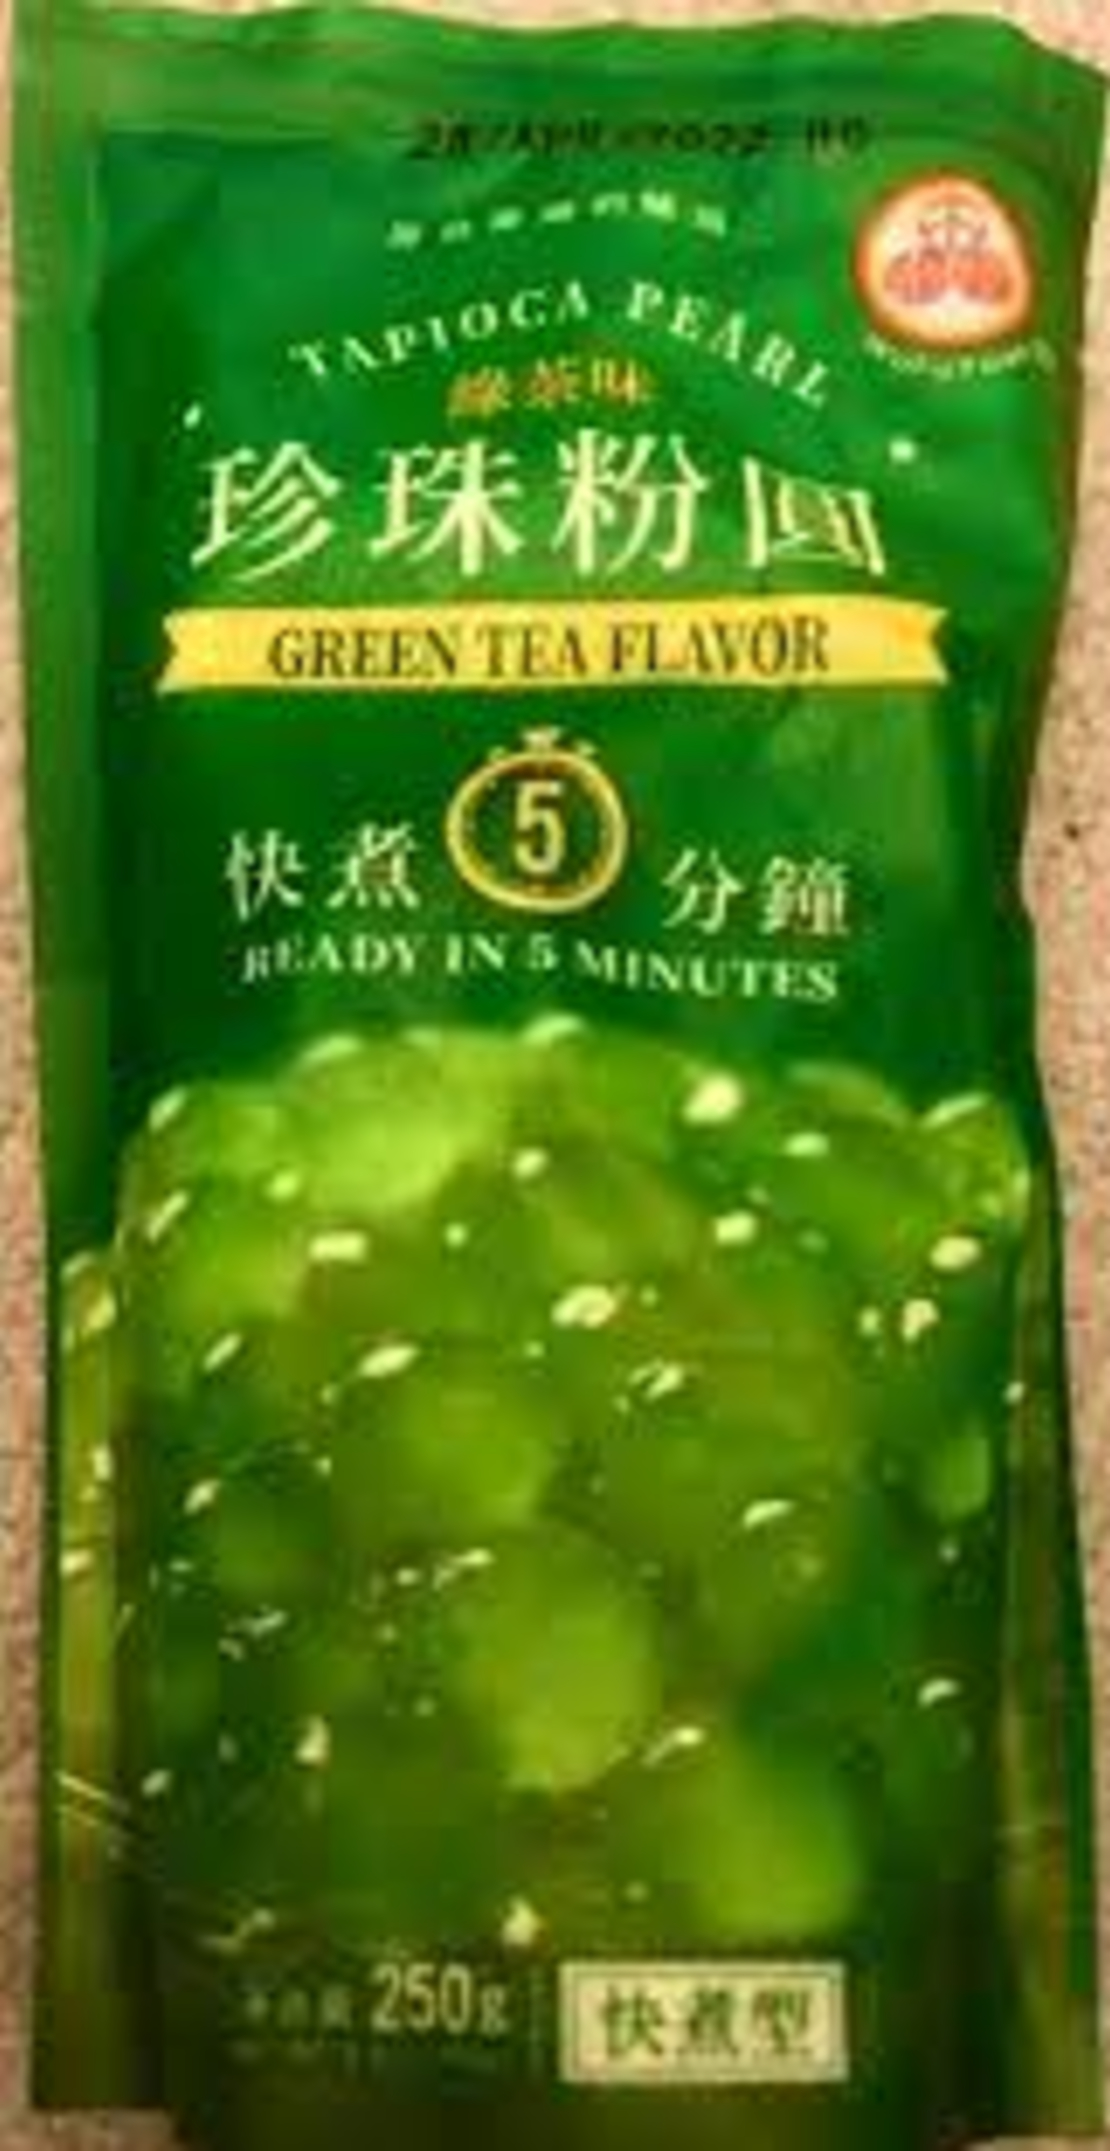 Tapioca green tea flavor 250grms.